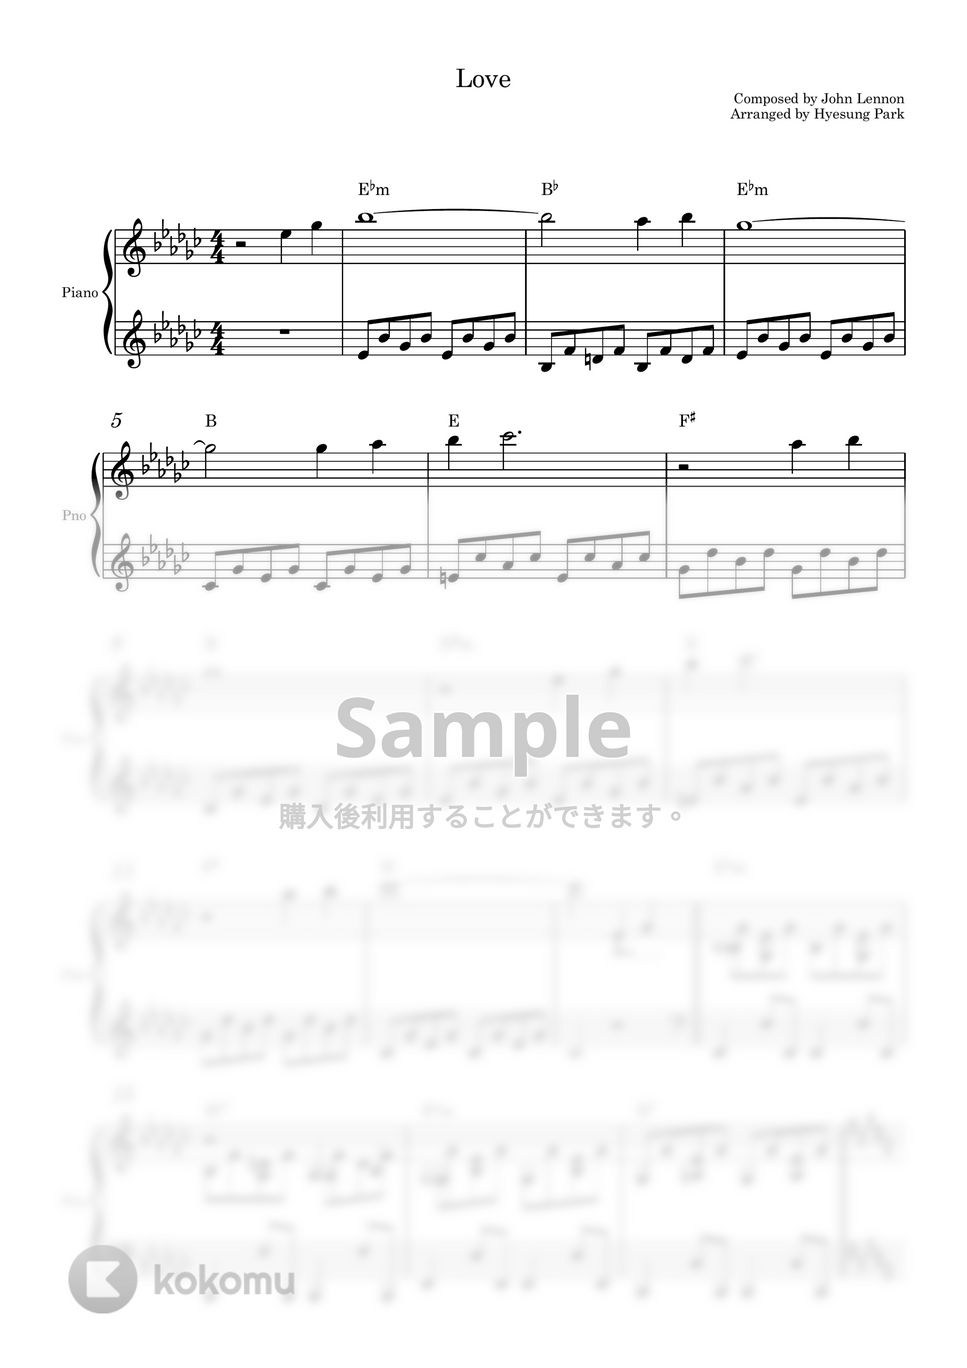 John Lennon - Love (ピアノソロ) by Piano QQQ